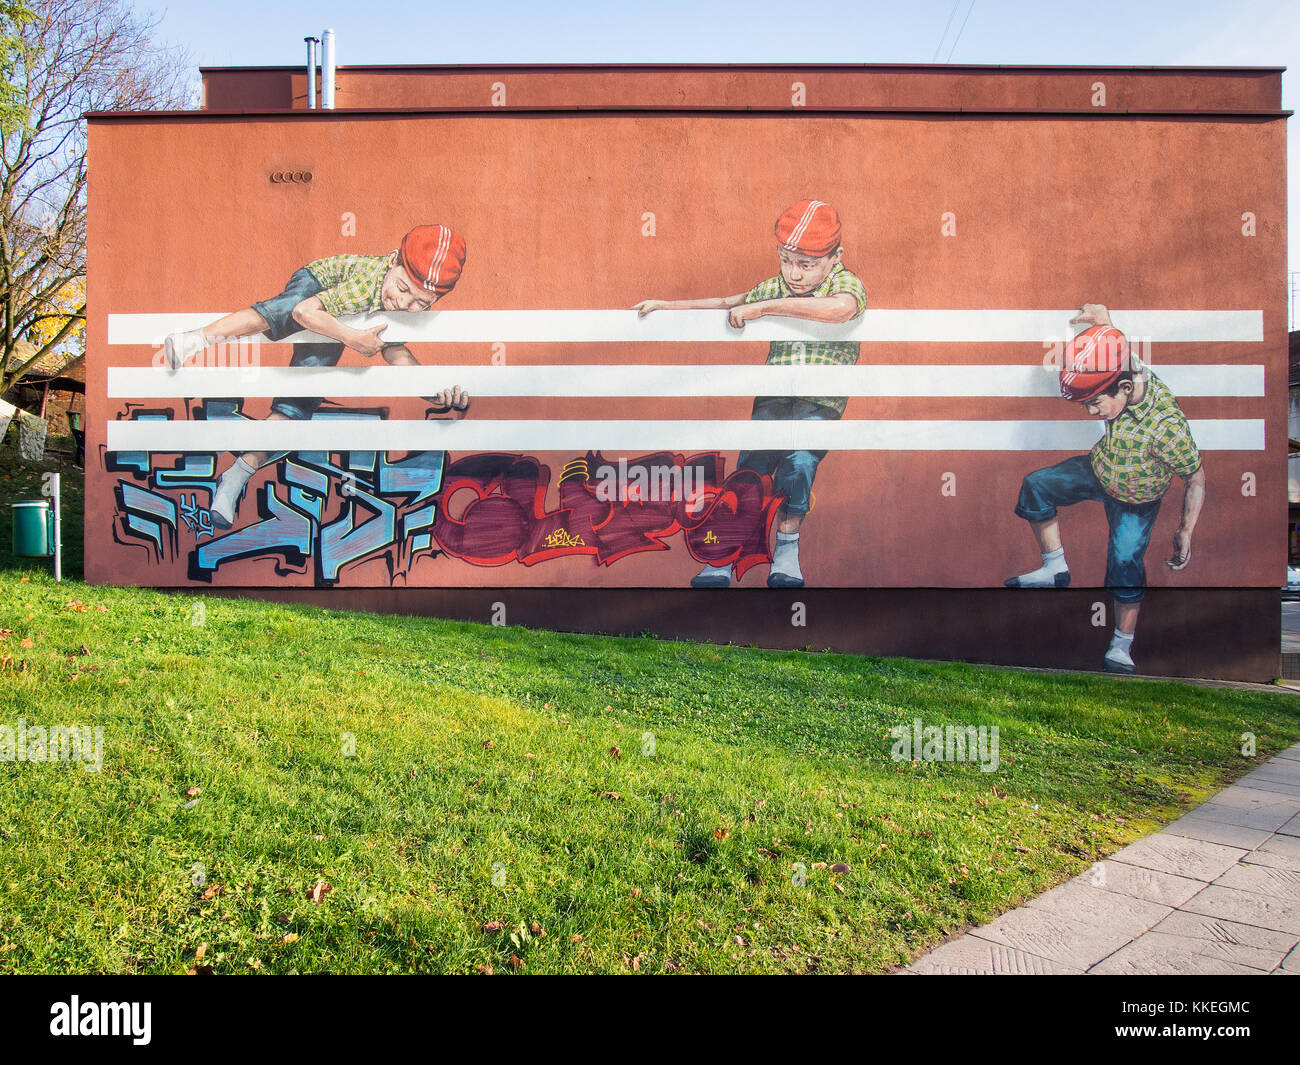 Kinder spielen mit adidas Streifen Wandbild (Graffiti) in Kaunas, Litauen  Stockfotografie - Alamy